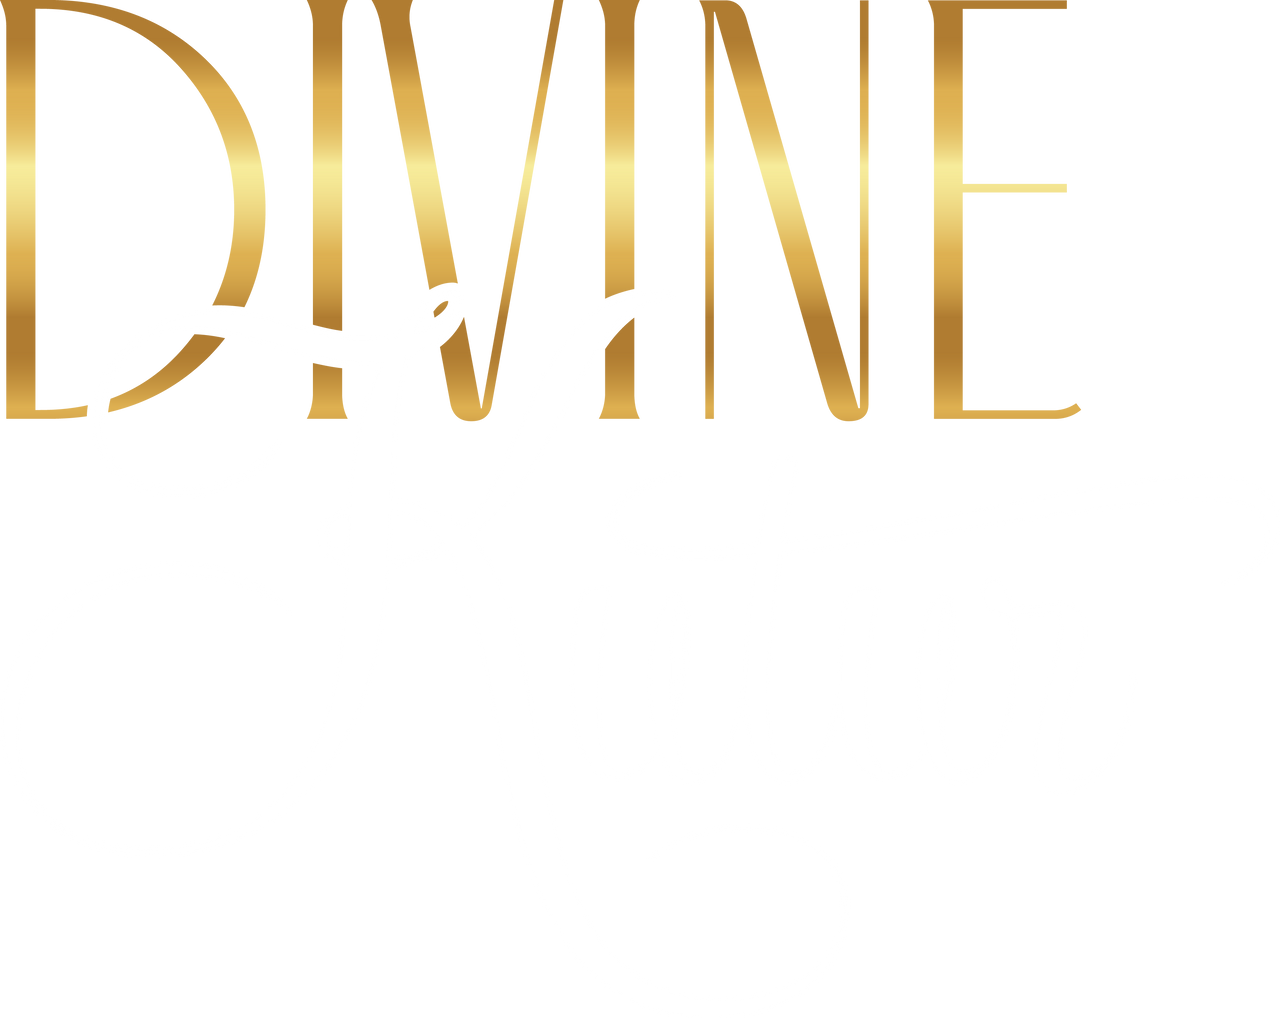 Divine Kutur